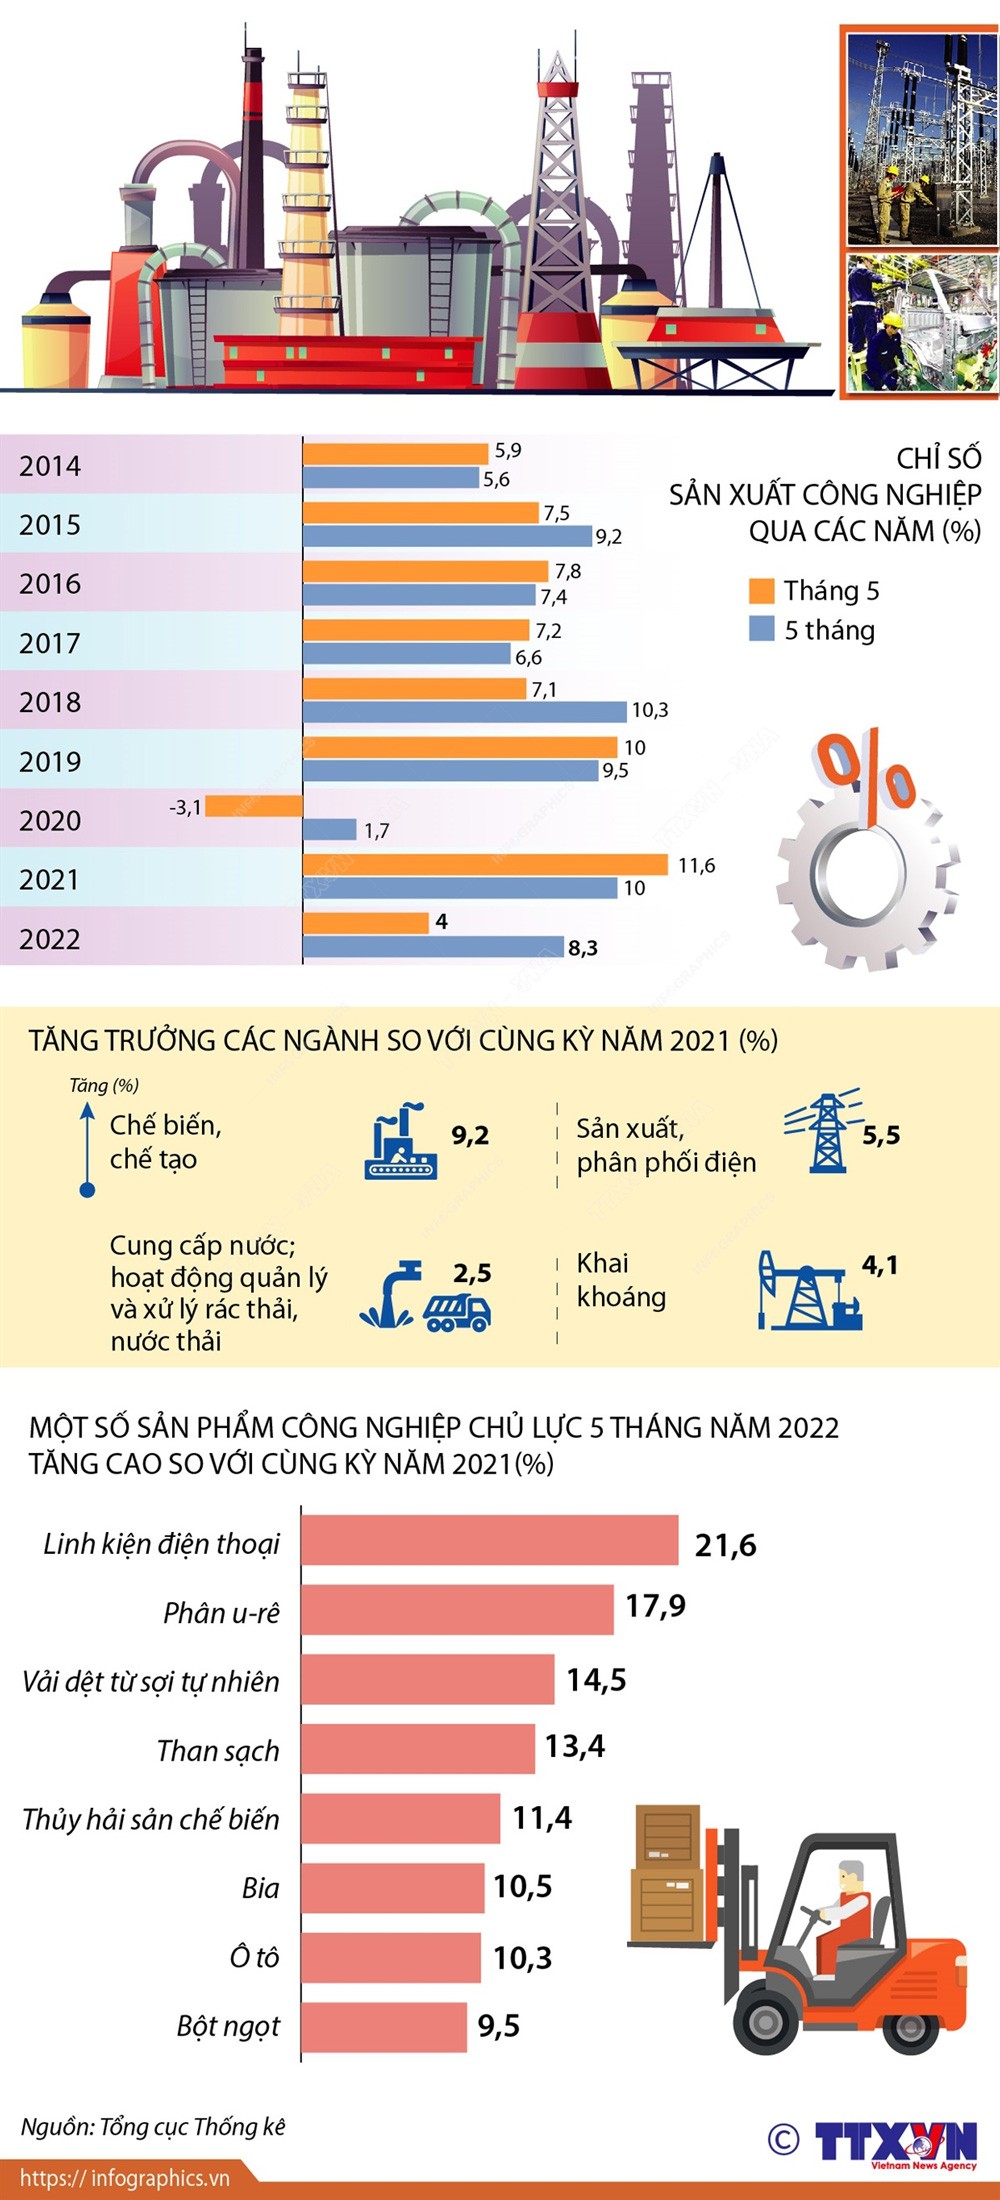 Chỉ số sản xuất công nghiệp 5 tháng năm 2022 tăng 8,3%